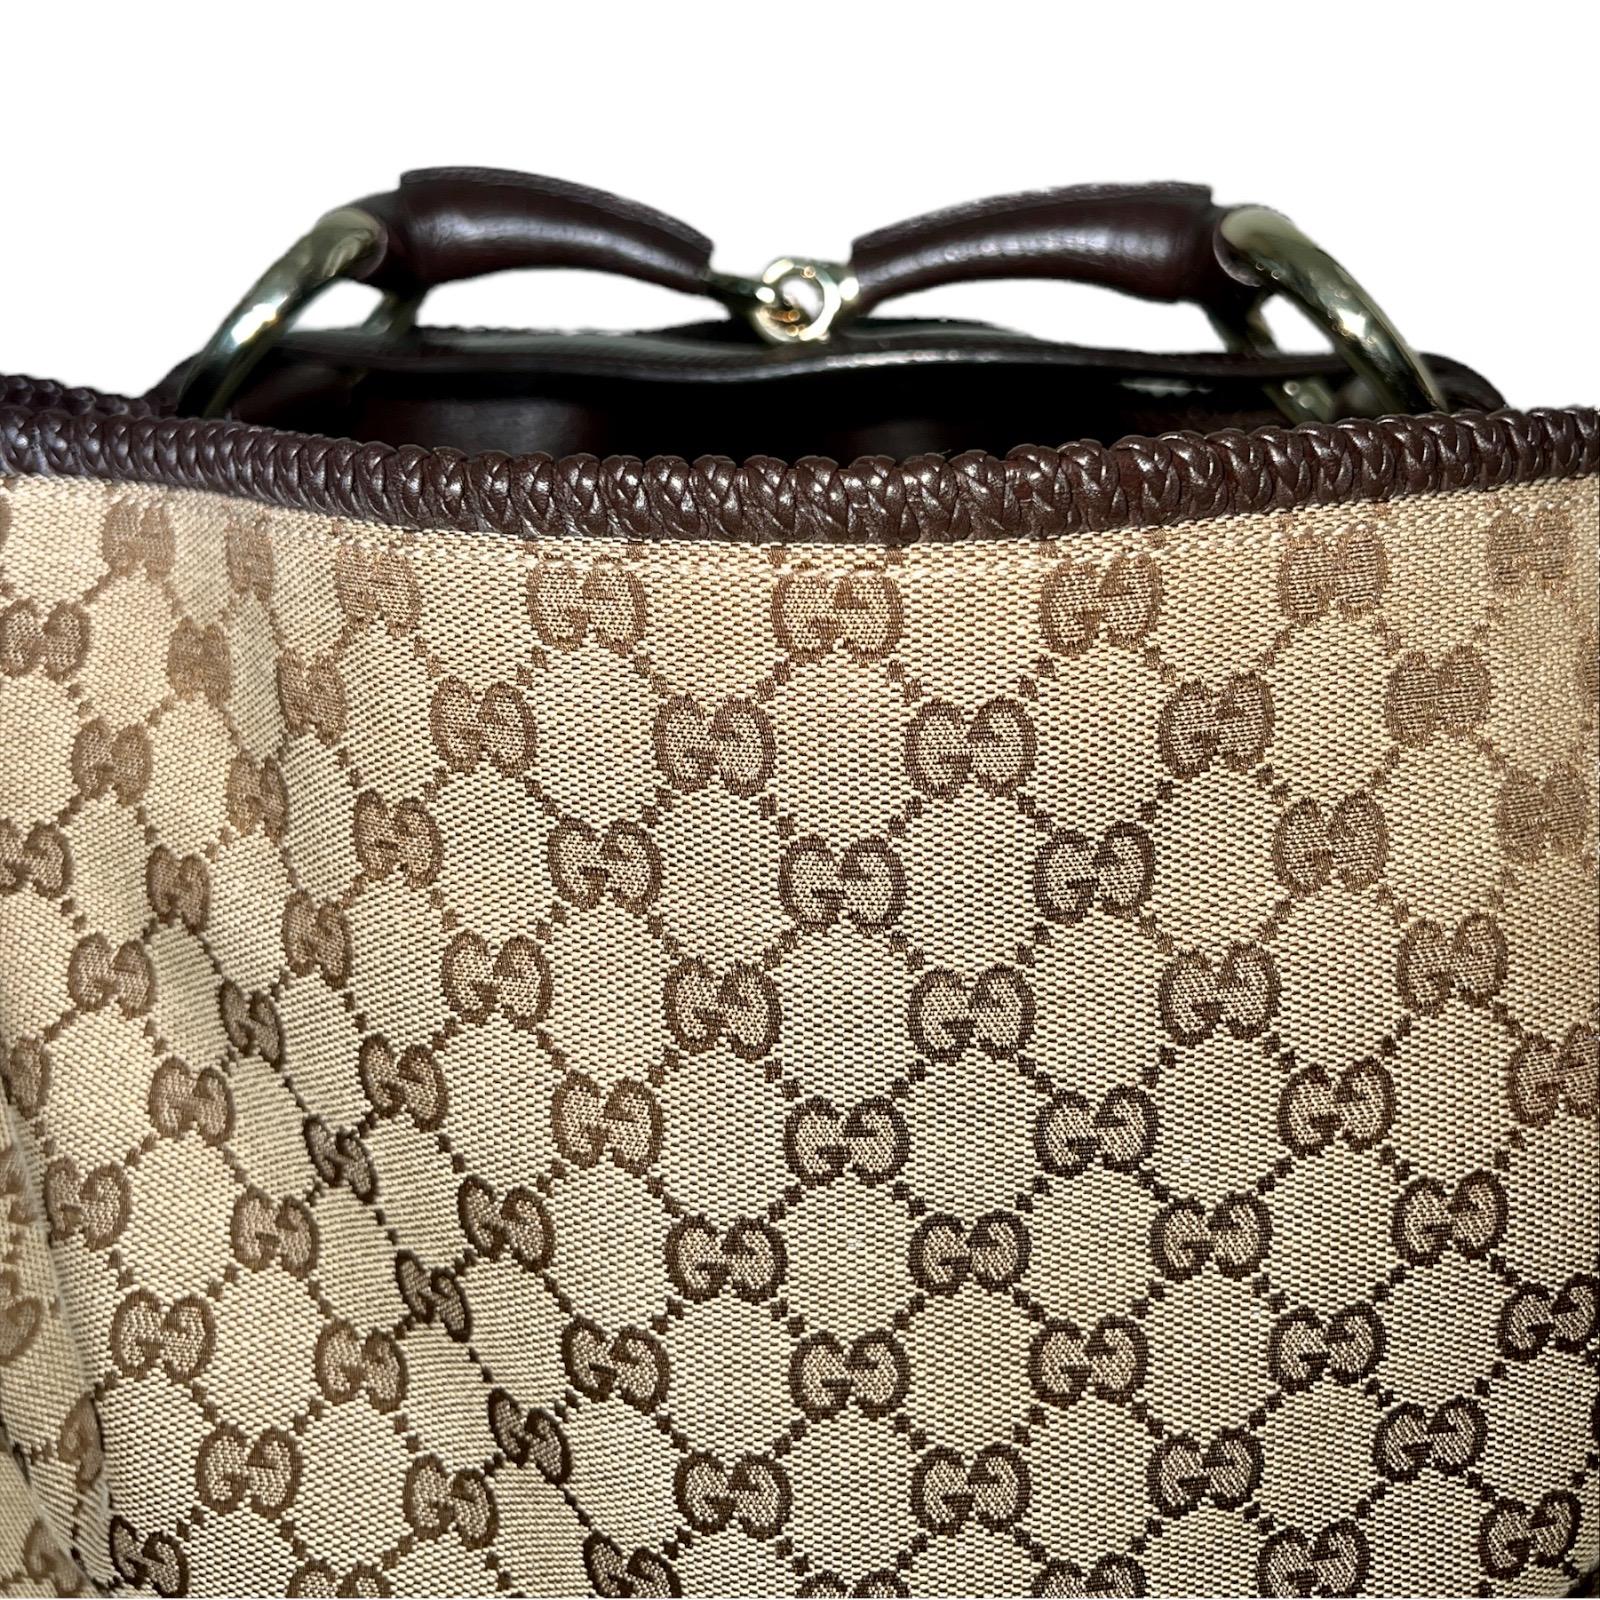 UNWORN Gucci GG Monogram Canvas XL Hobo Bag Satchel with Horsebit Detail 5